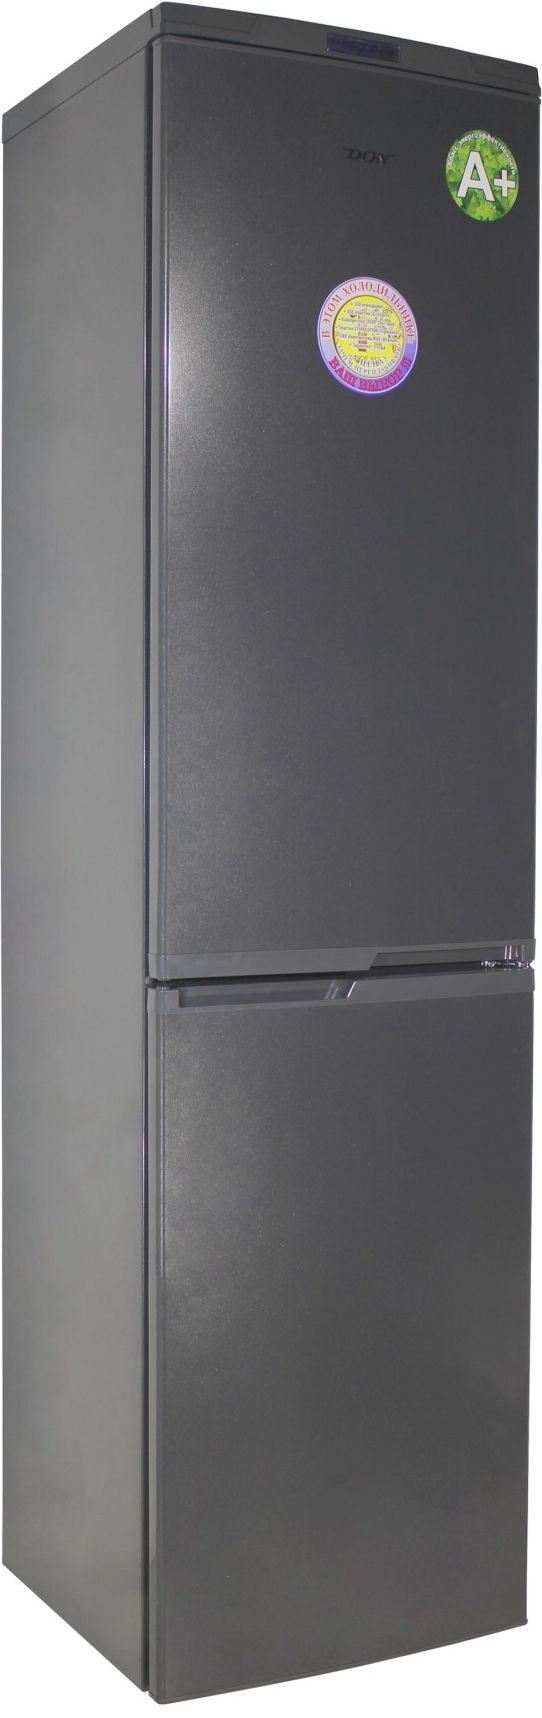 холодильник don r299, купить в Красноярске холодильник don r299,  купить в Красноярске дешево холодильник don r299, купить в Красноярске минимальной цене холодильник don r299